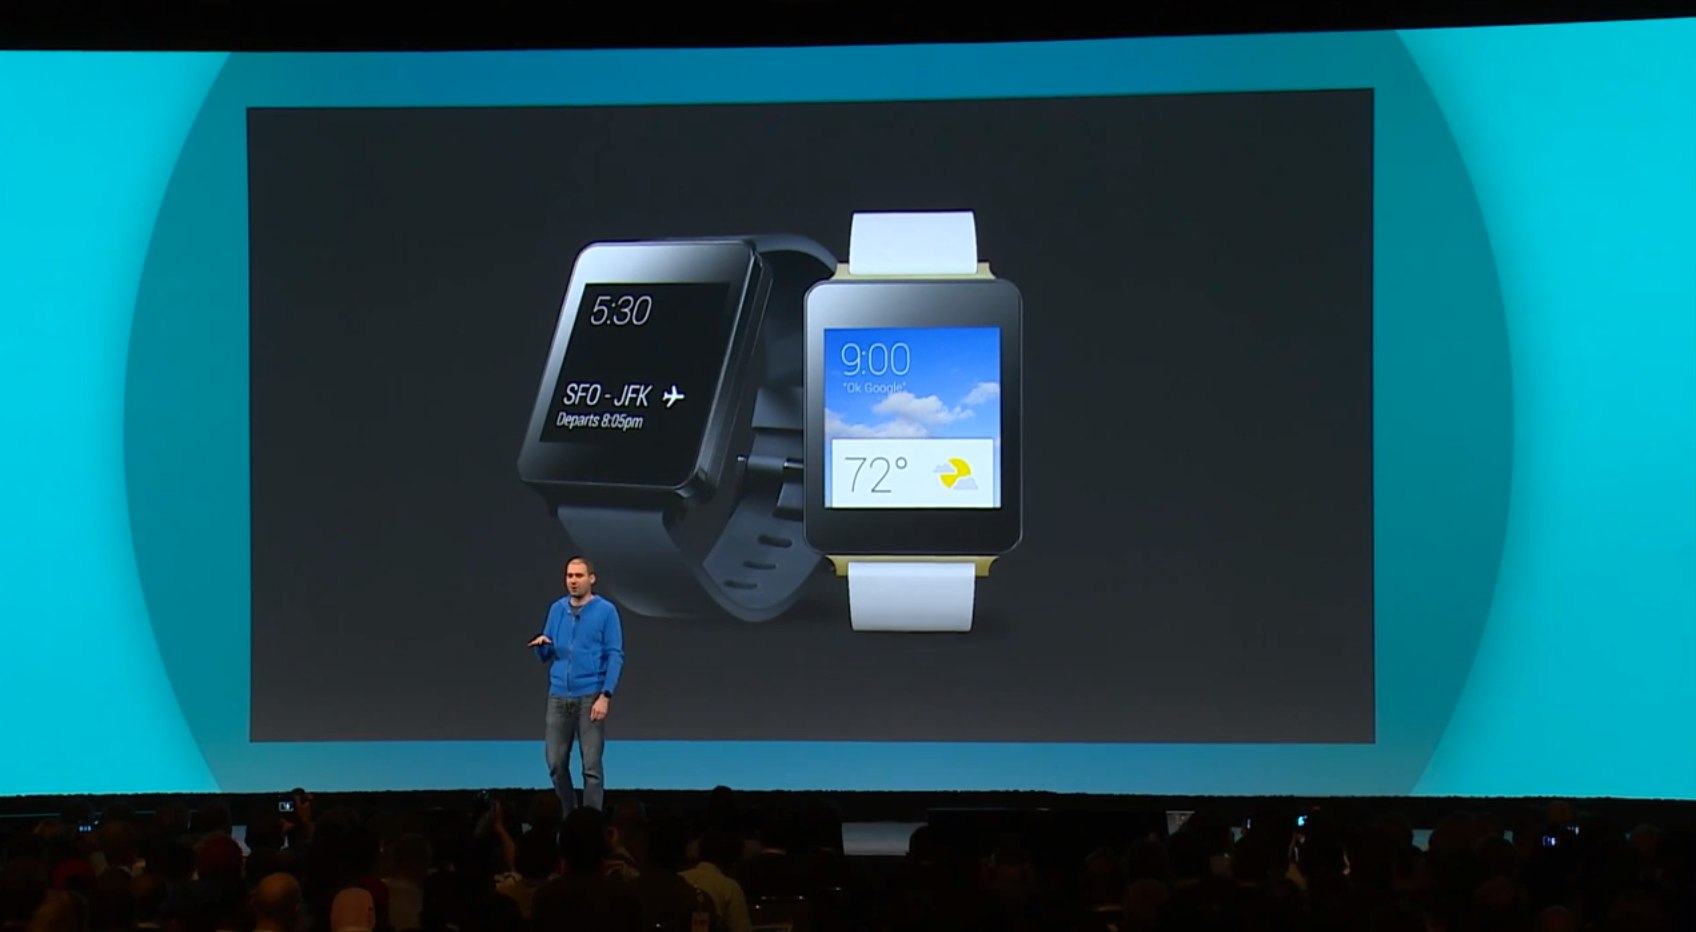 グーグルの腕時計型端末「Android Wear」では何ができて、どう便利になるのか